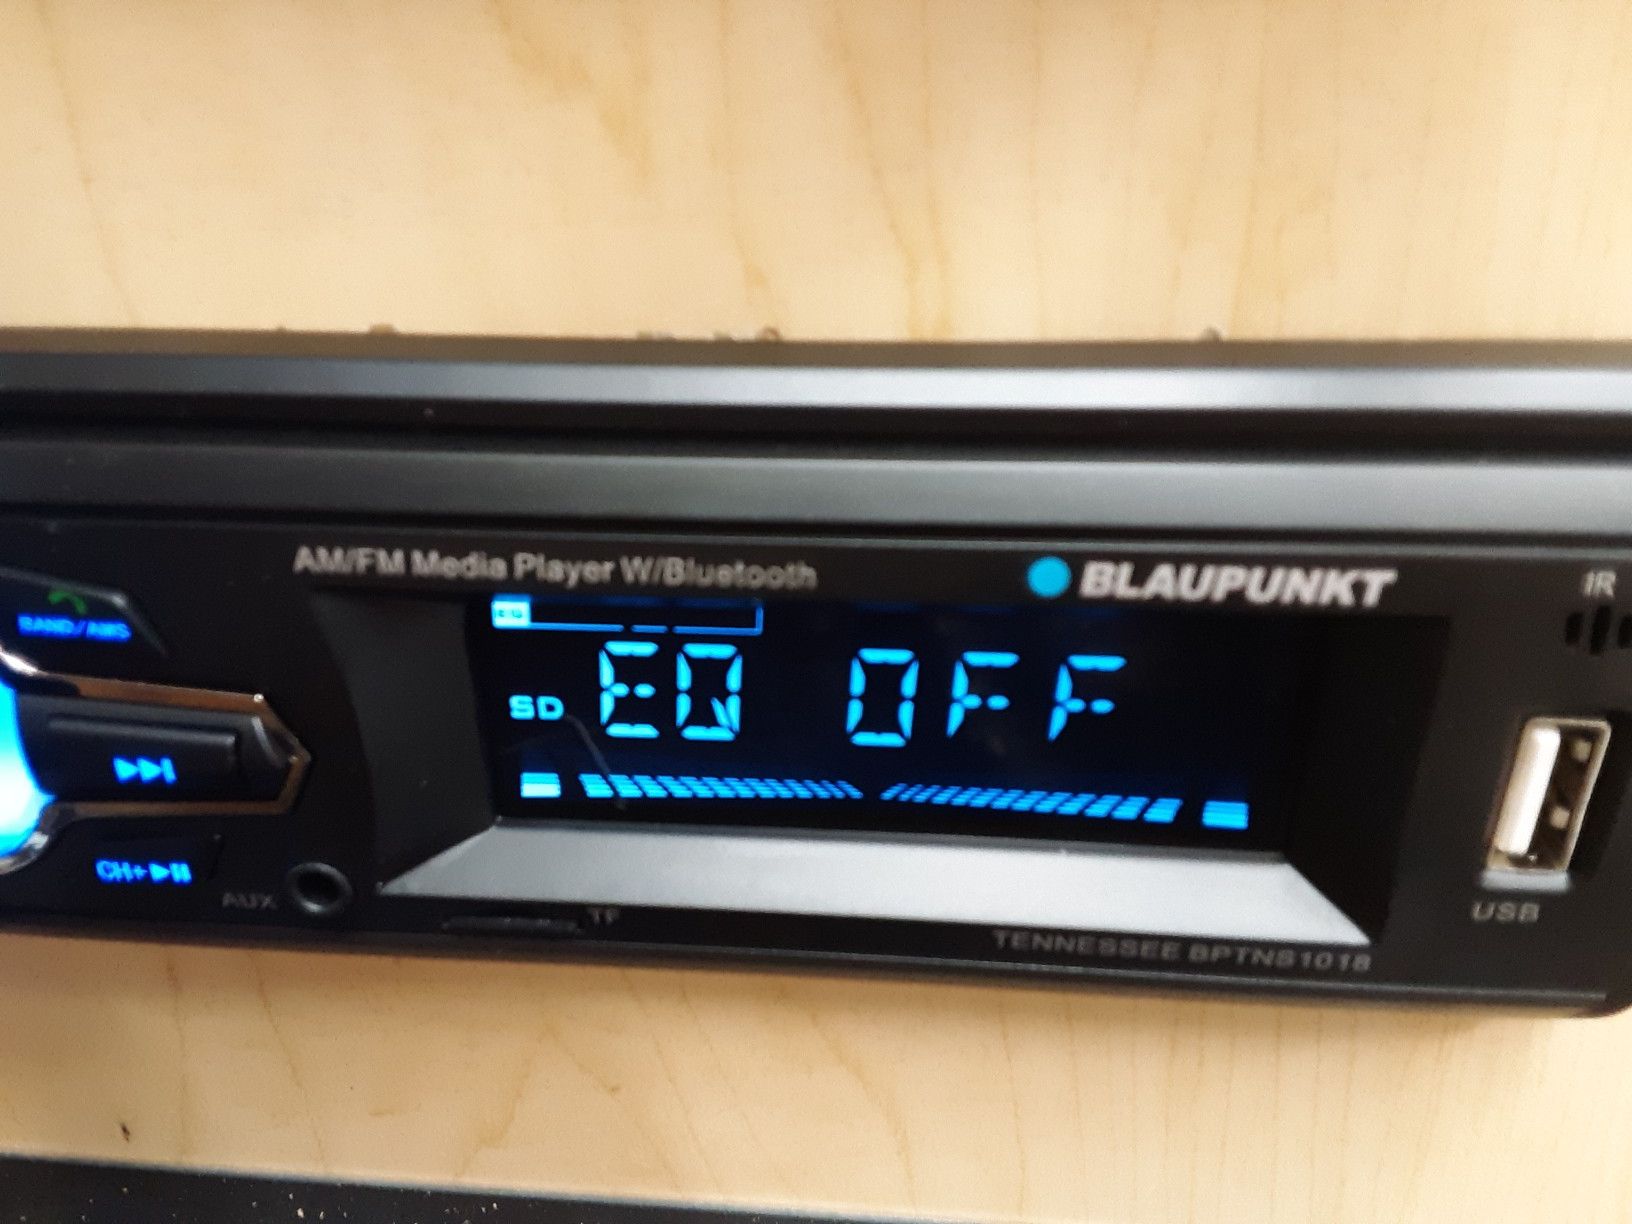 Car stereo : Blaupunkt am /FM Bluetooth media receiver aux usb port sd card slot remote control ( no cd player )